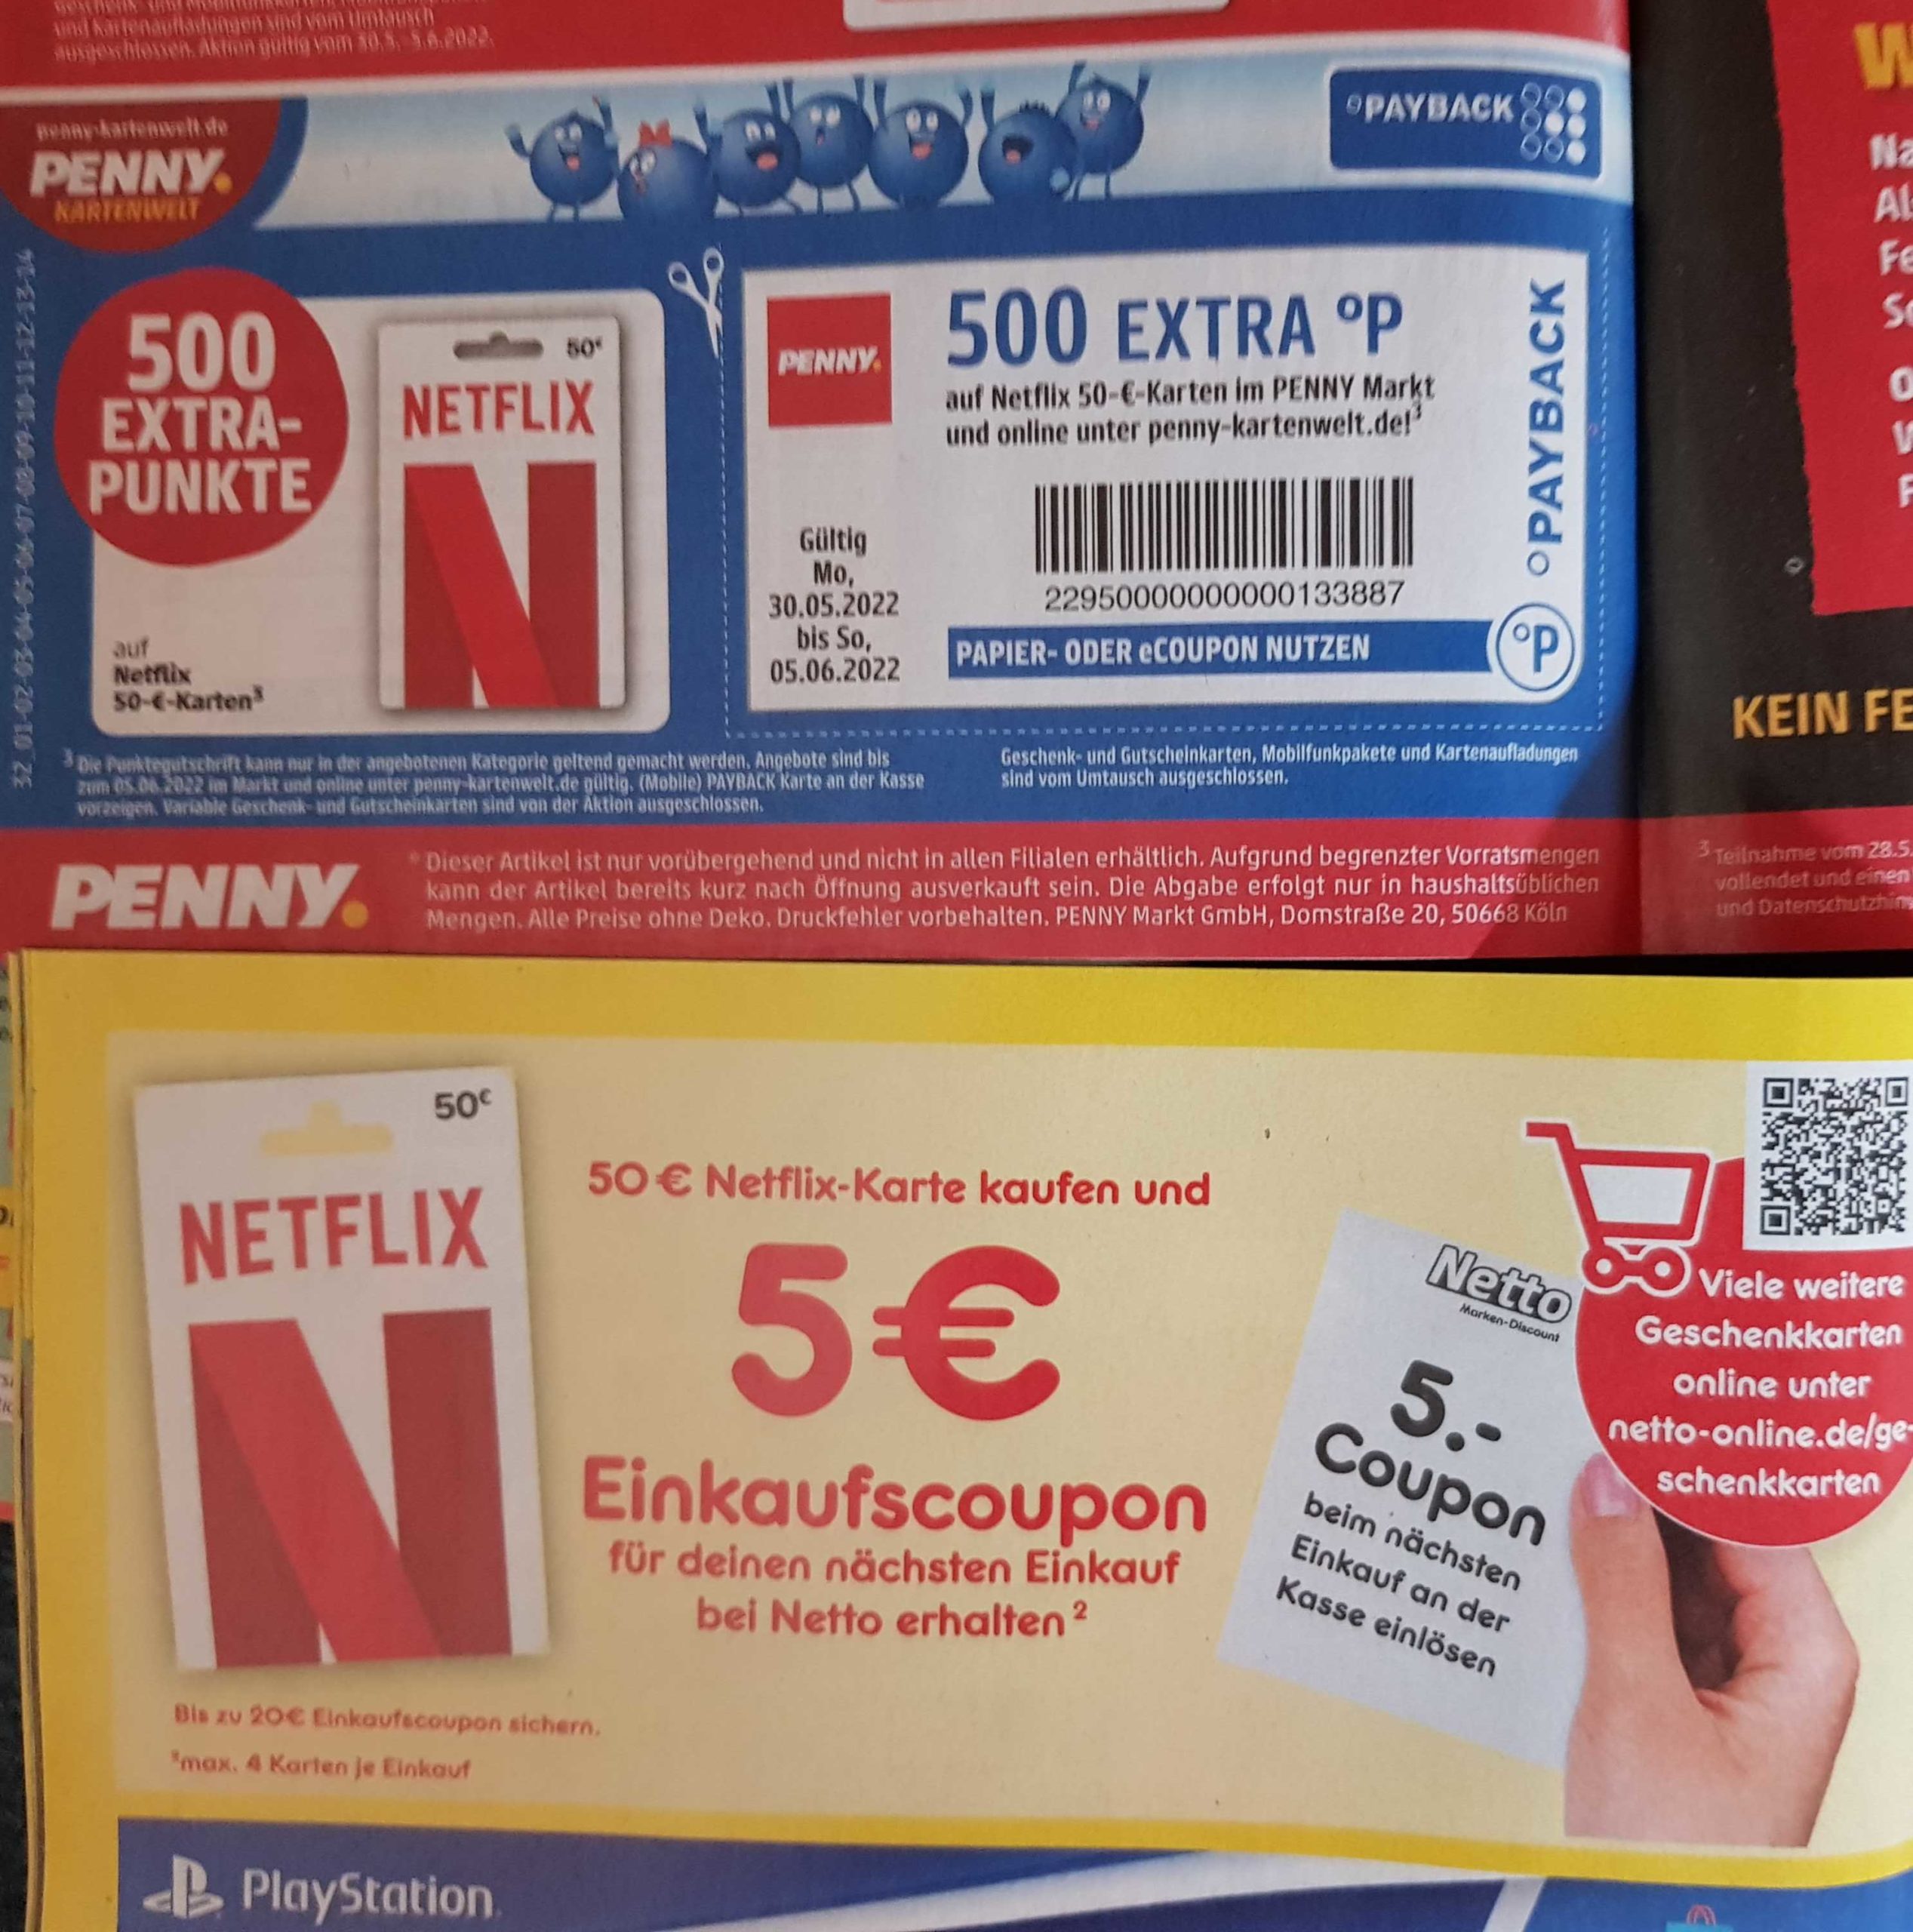 Netto 50€ bei und sparen Penny *Netflix* bei 10% Guthabenkarten